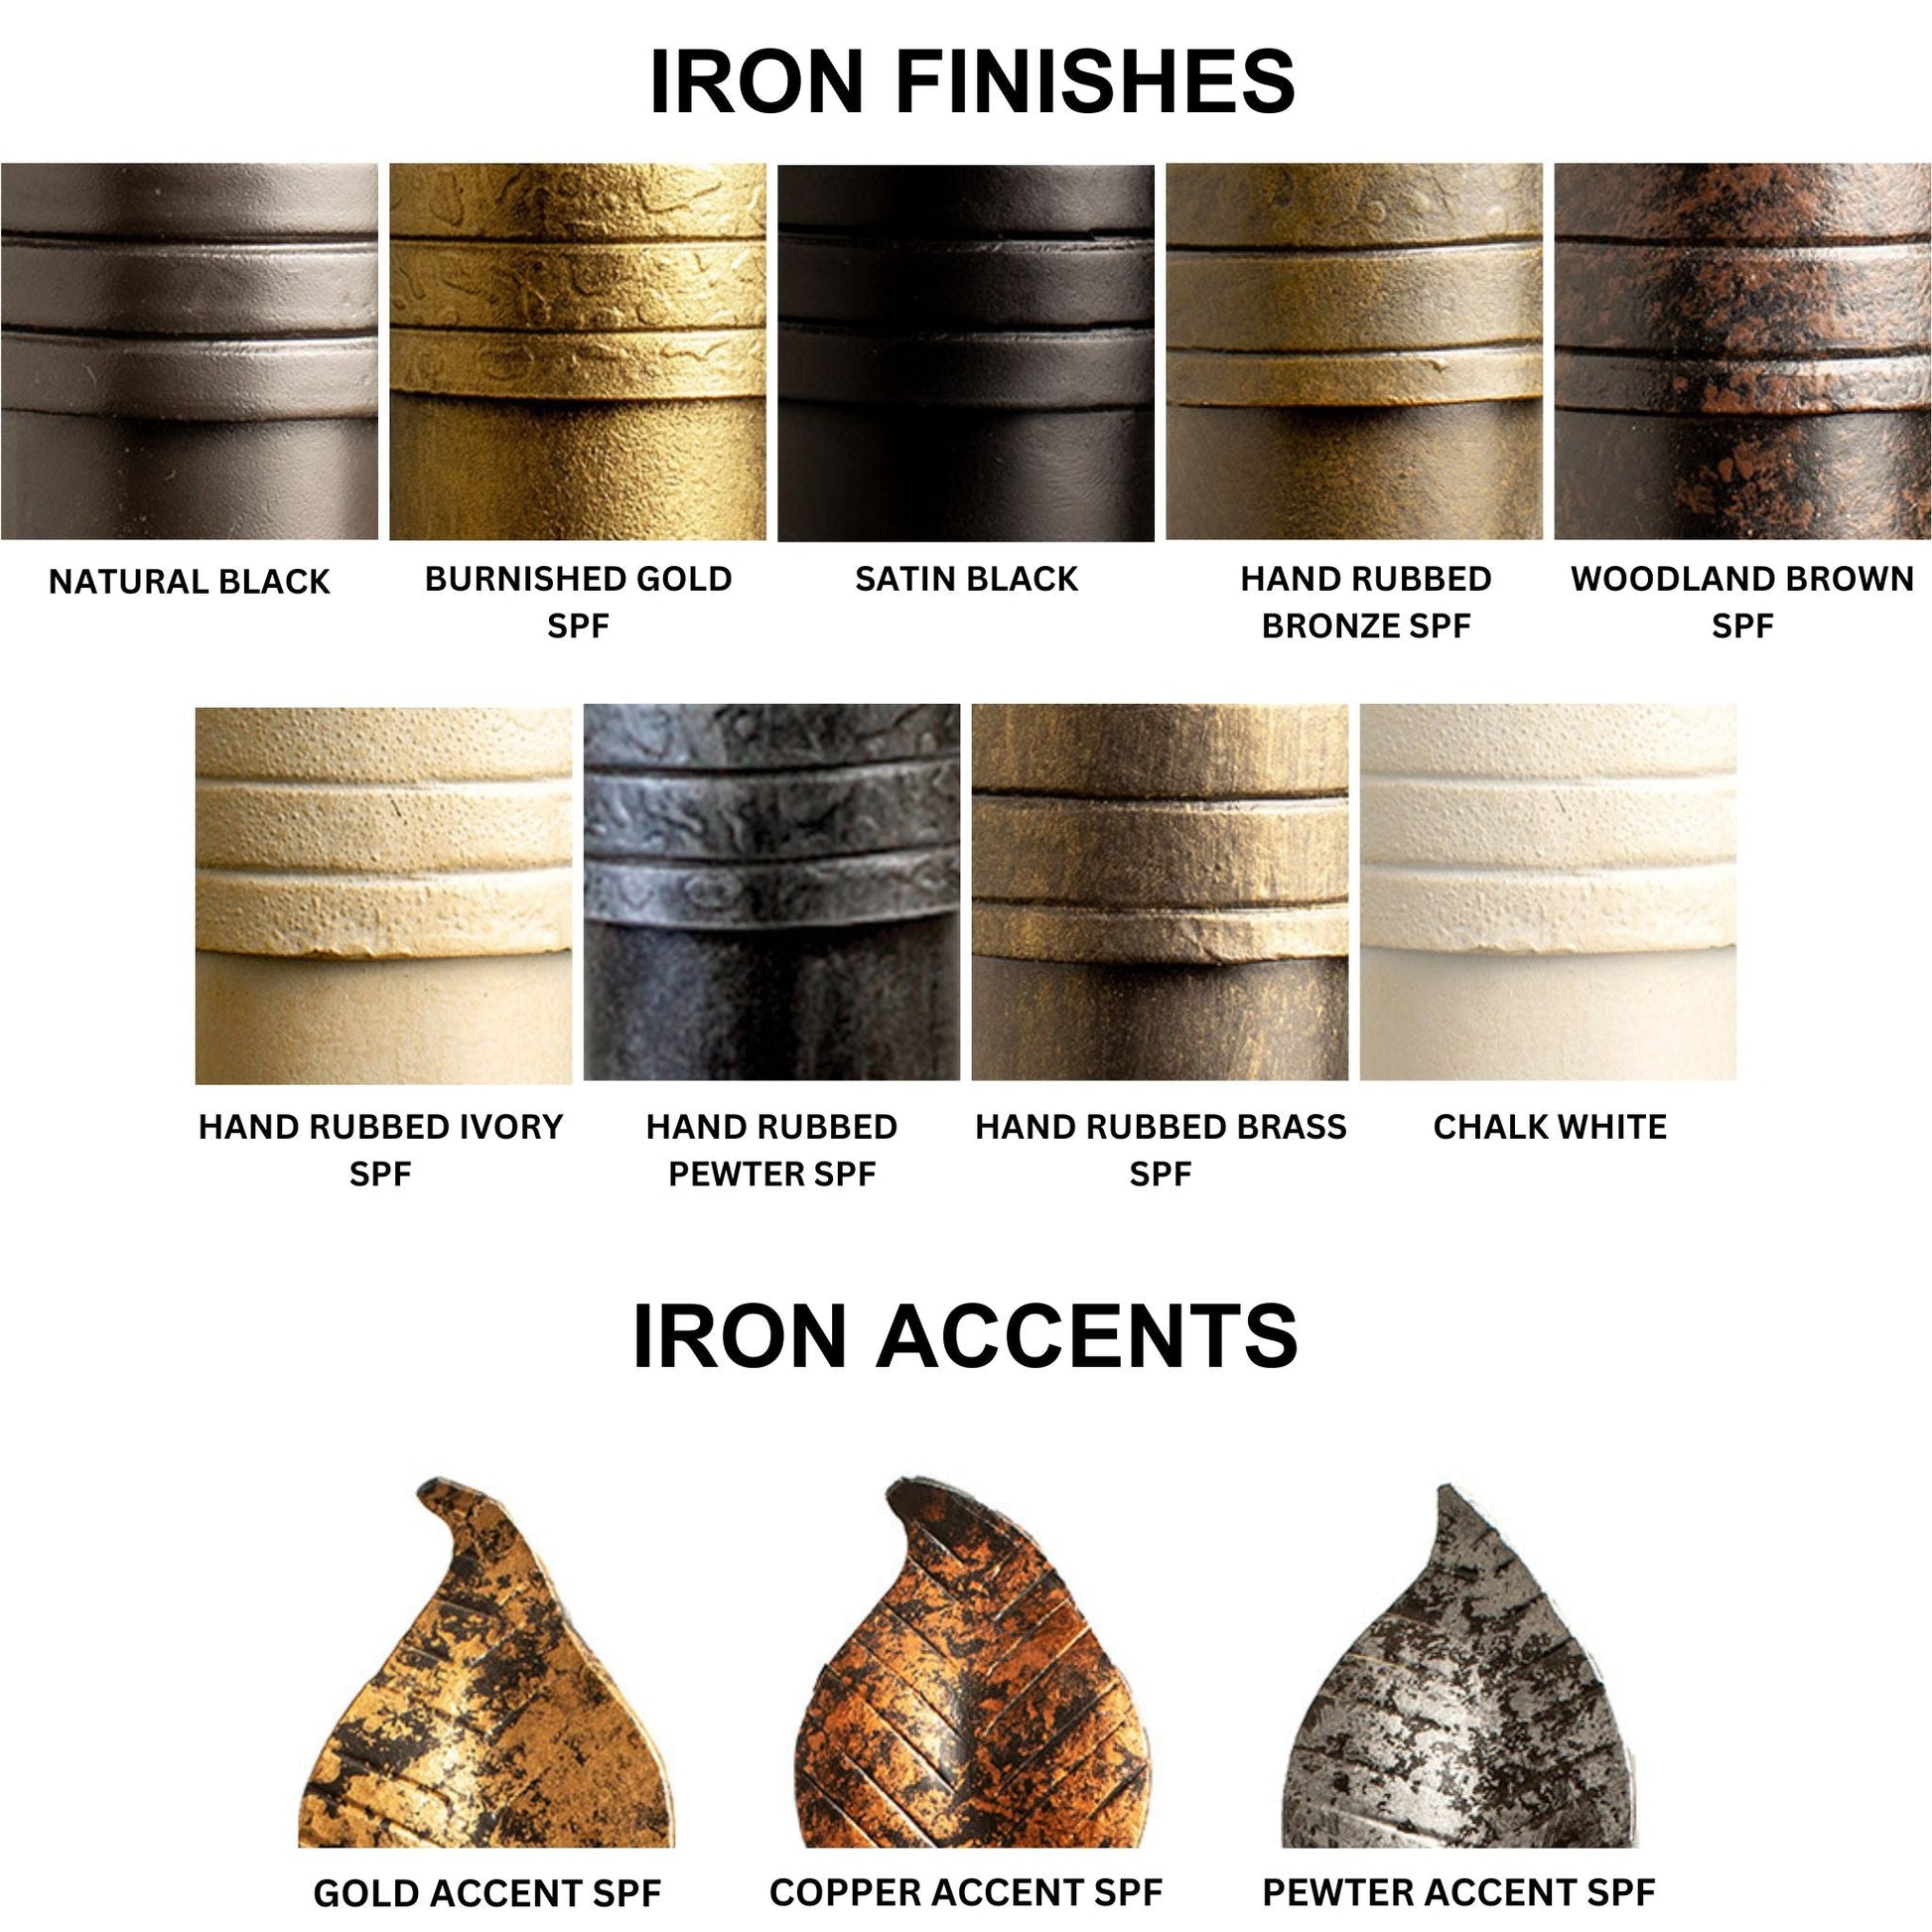 Stone County Ironworks Leaf 24" Burnished Gold Iron Towel Bar